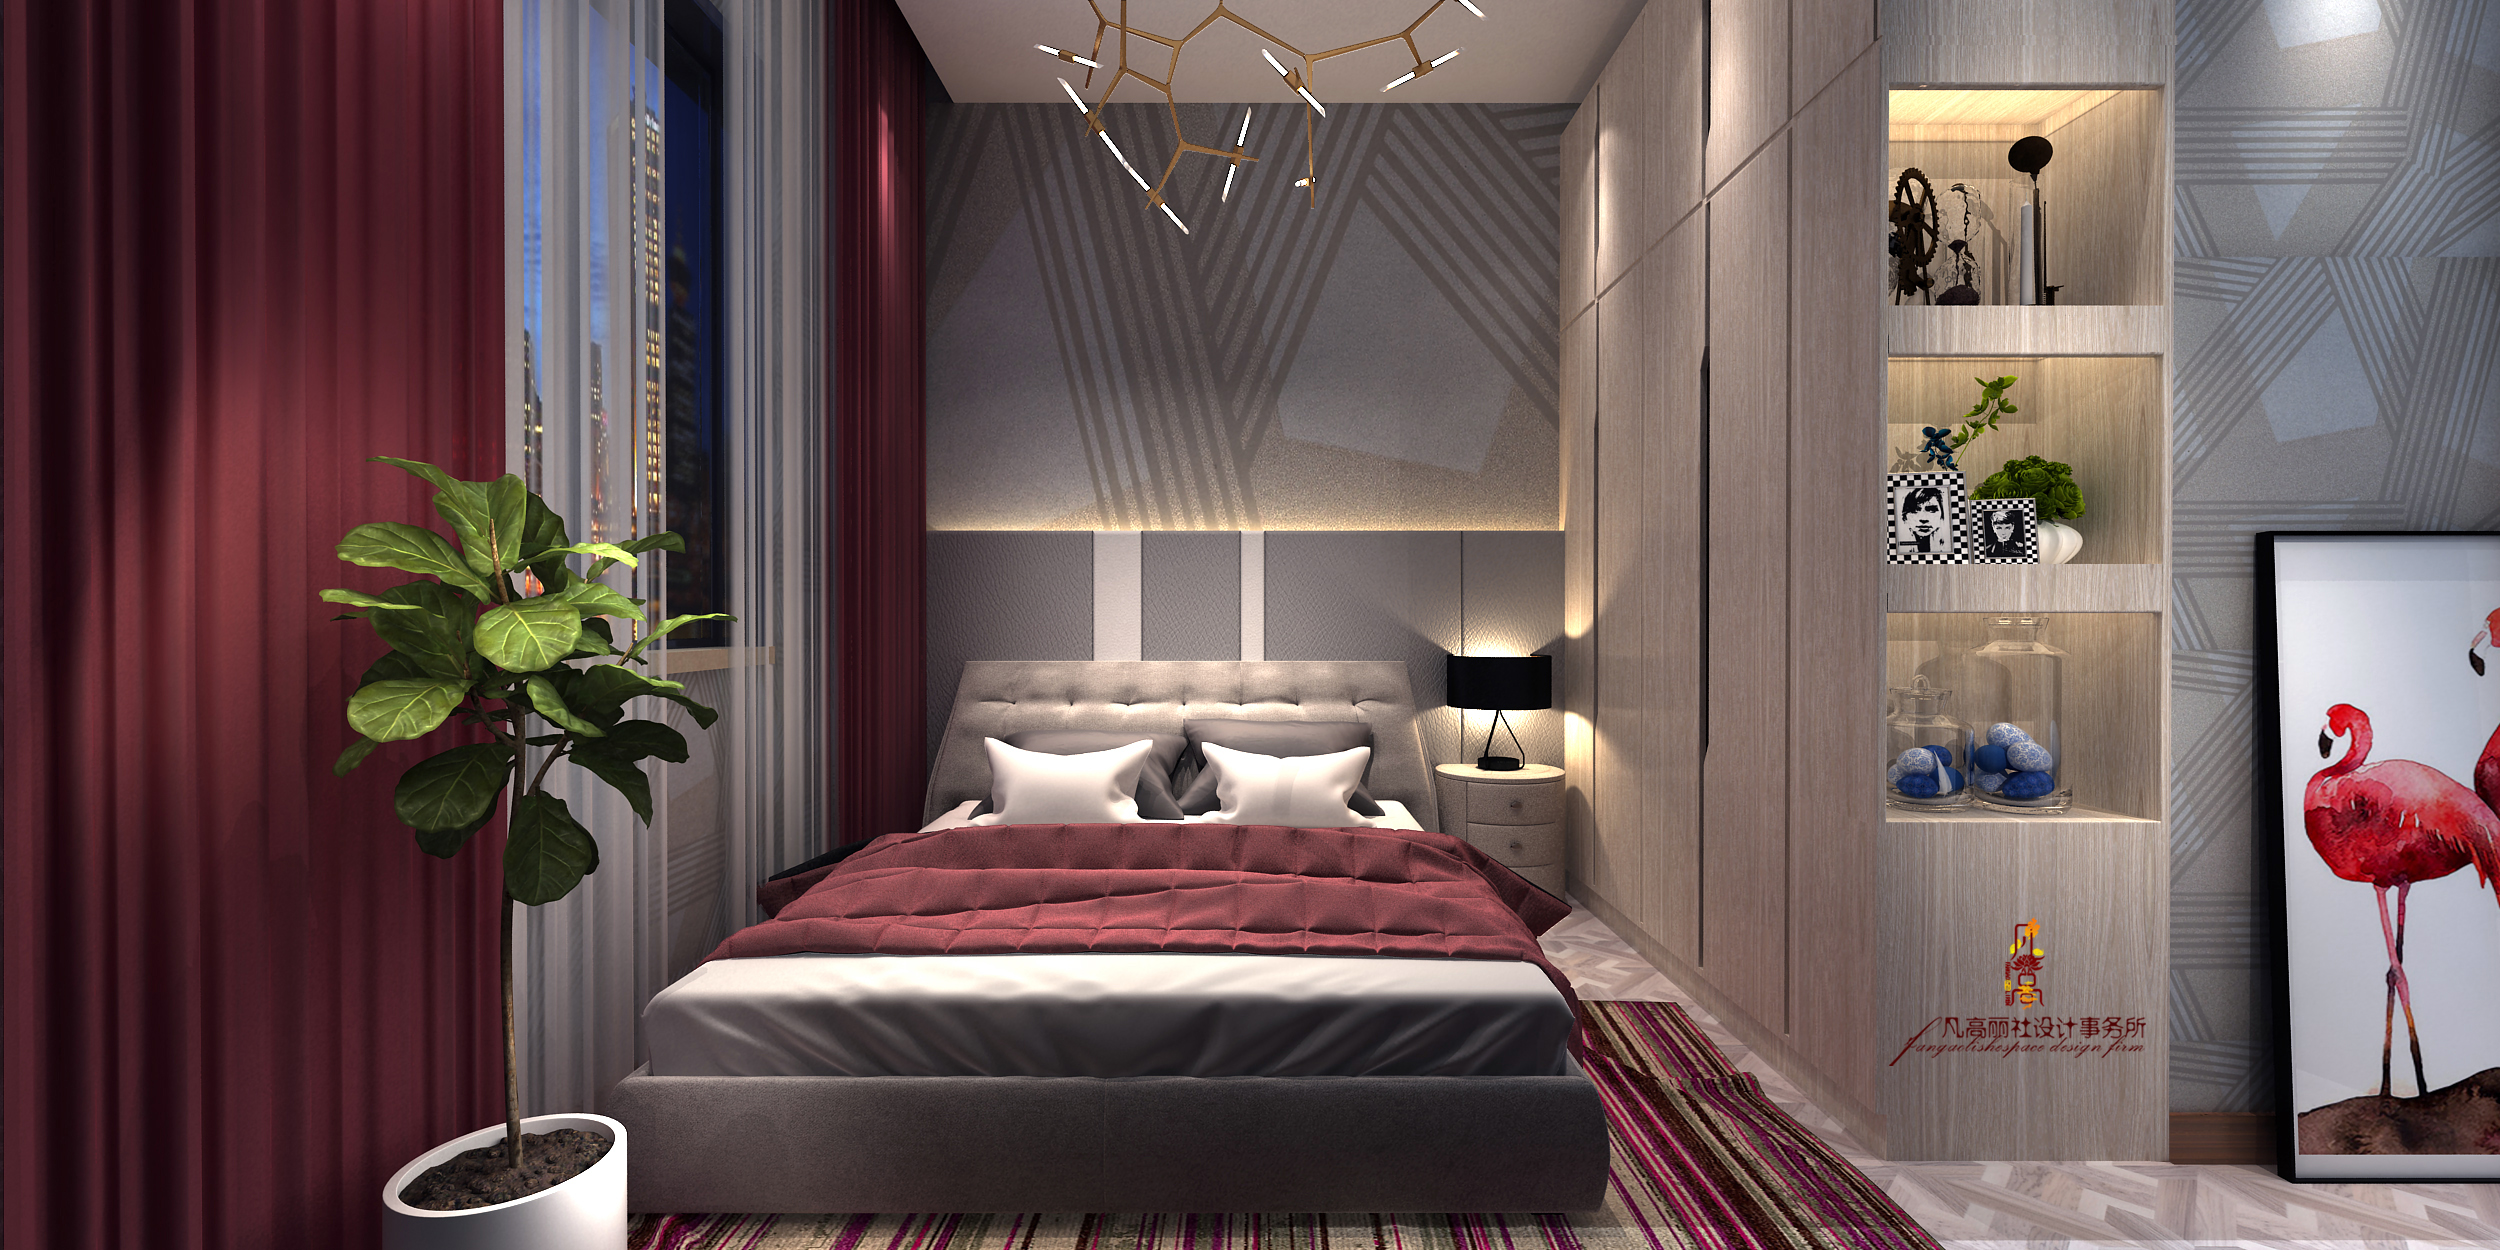 别墅 北欧 新古典 卧室图片来自天津凡高丽社空间设计事务所在颜值+气质的分享